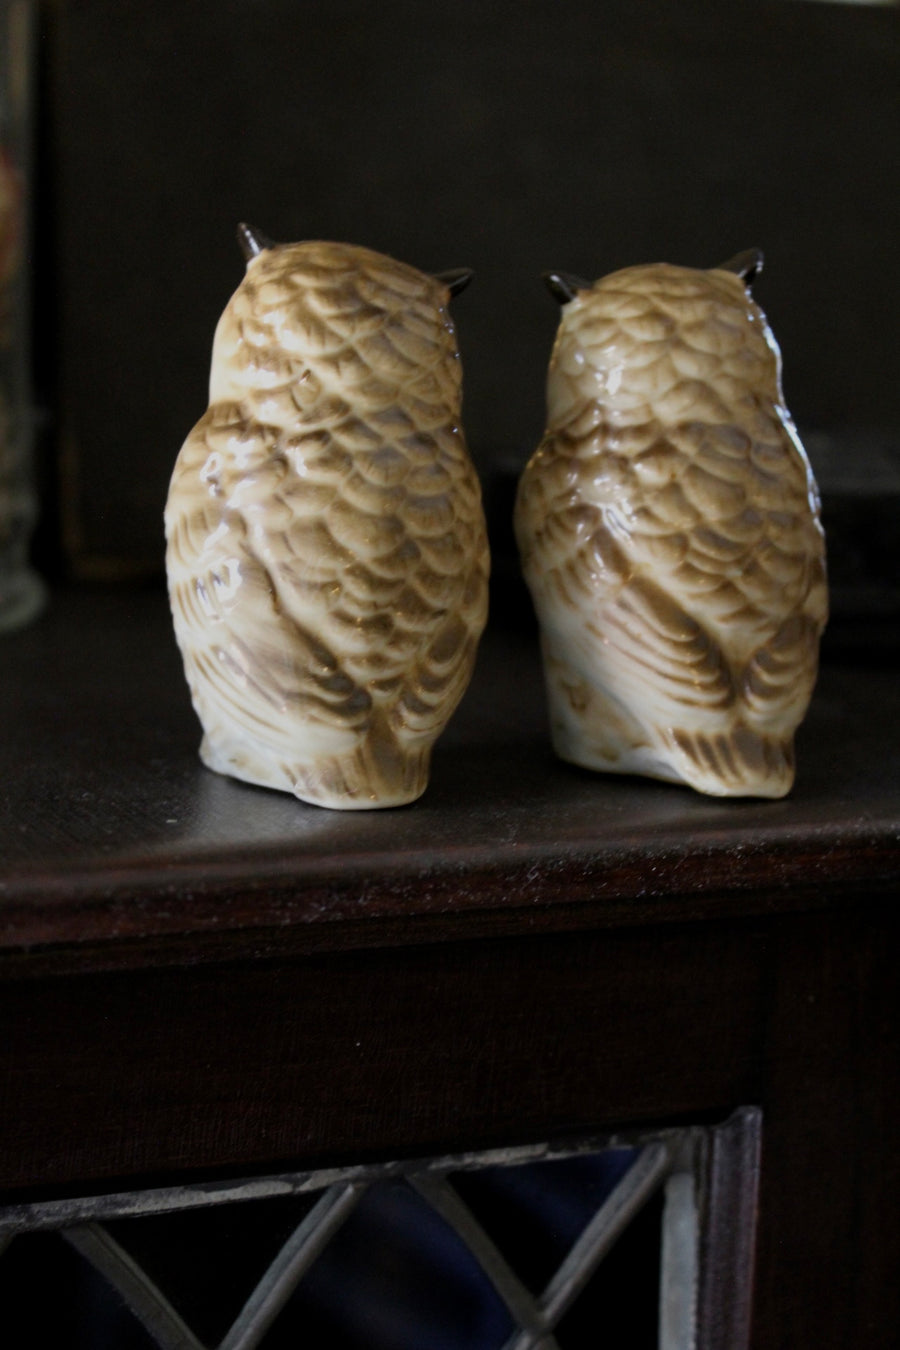 Vintage Owl Salt Shakers